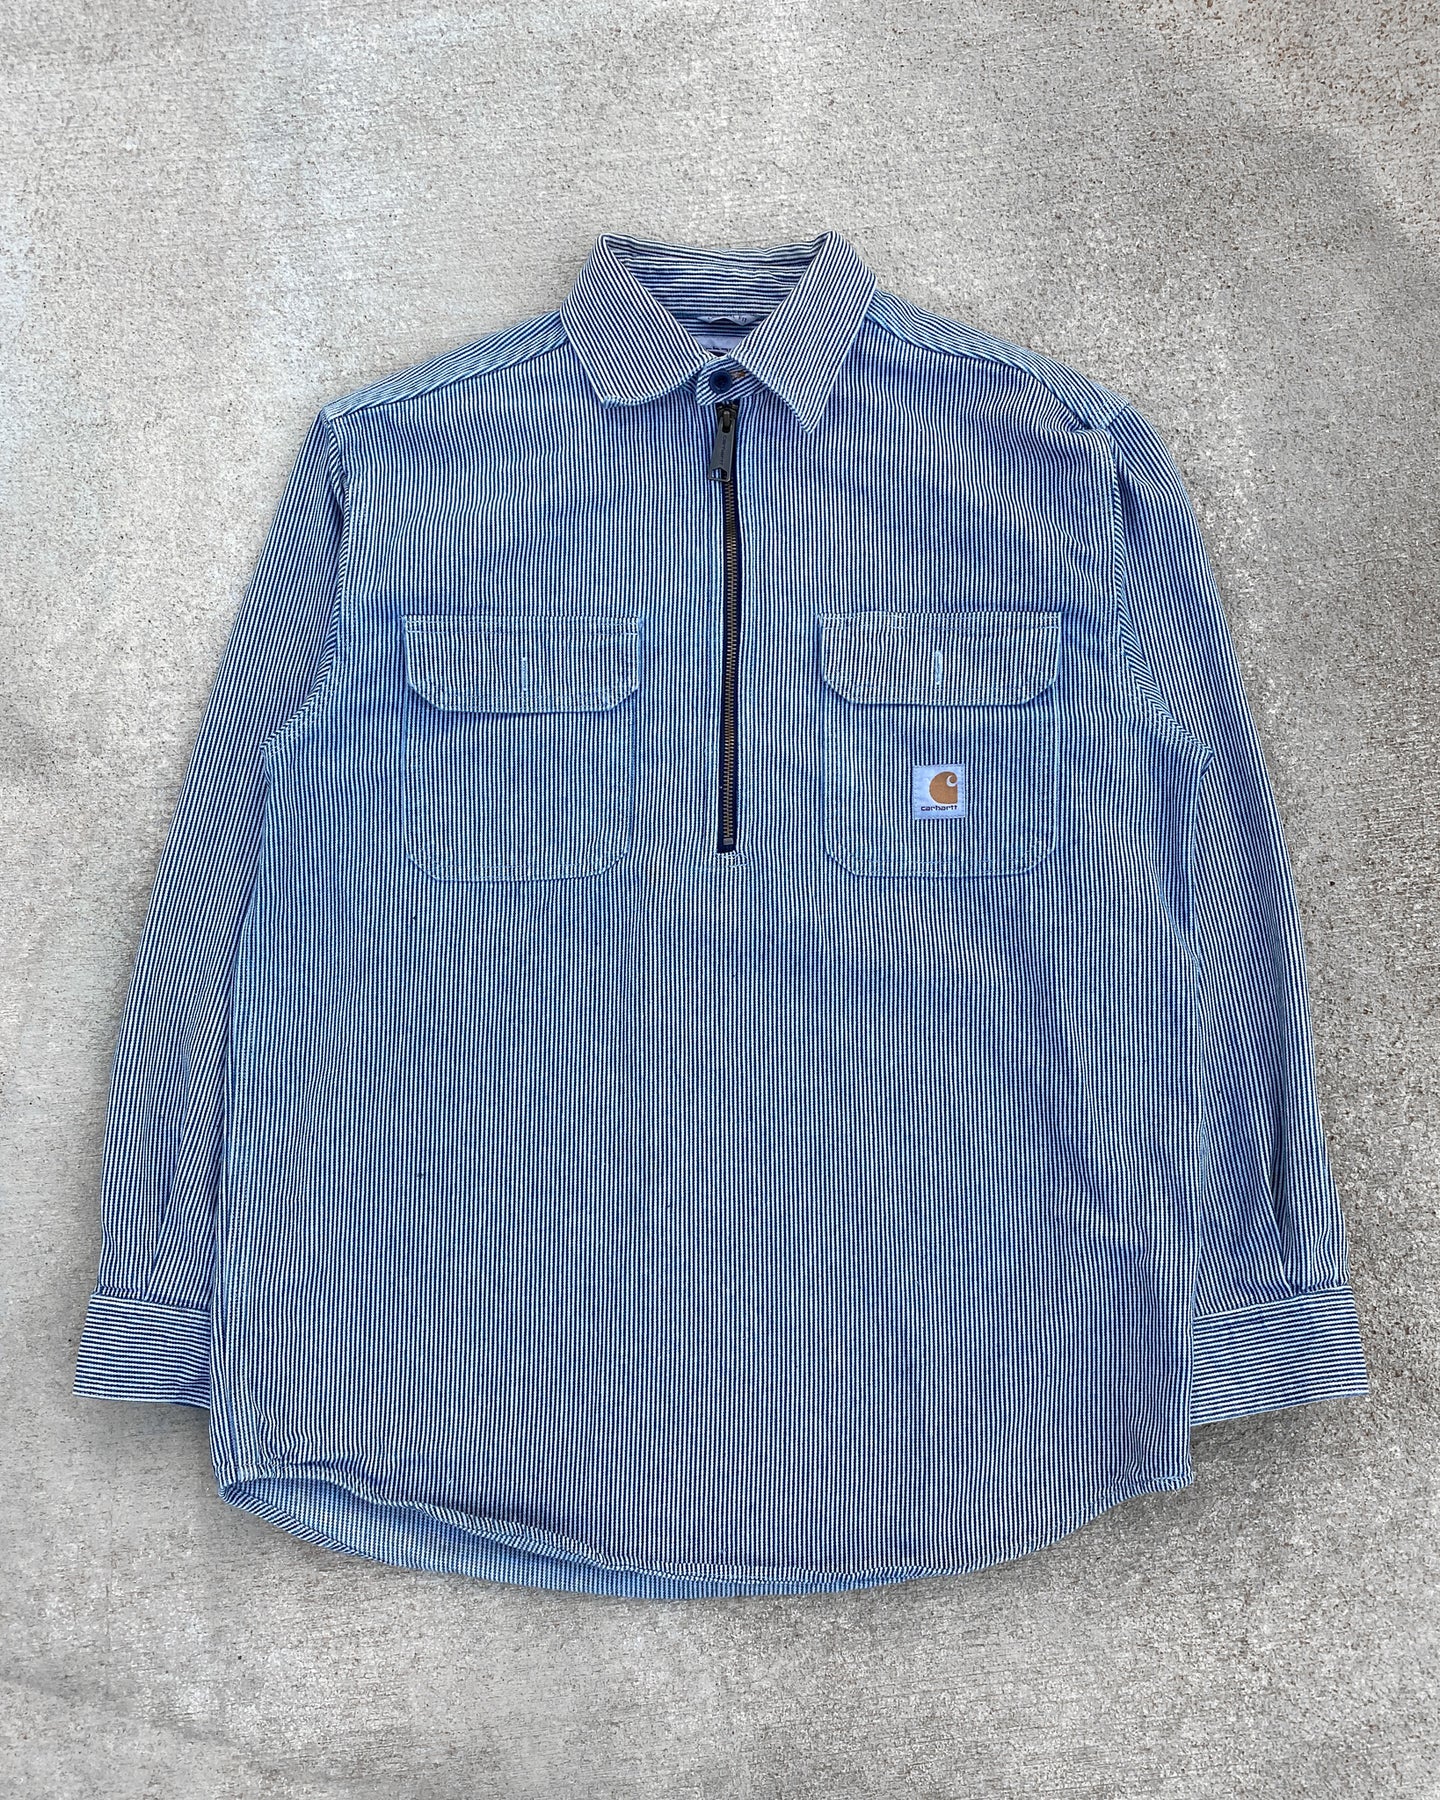 Carhartt Quarter Zip Pinstripe Work Shirt - Size Medium